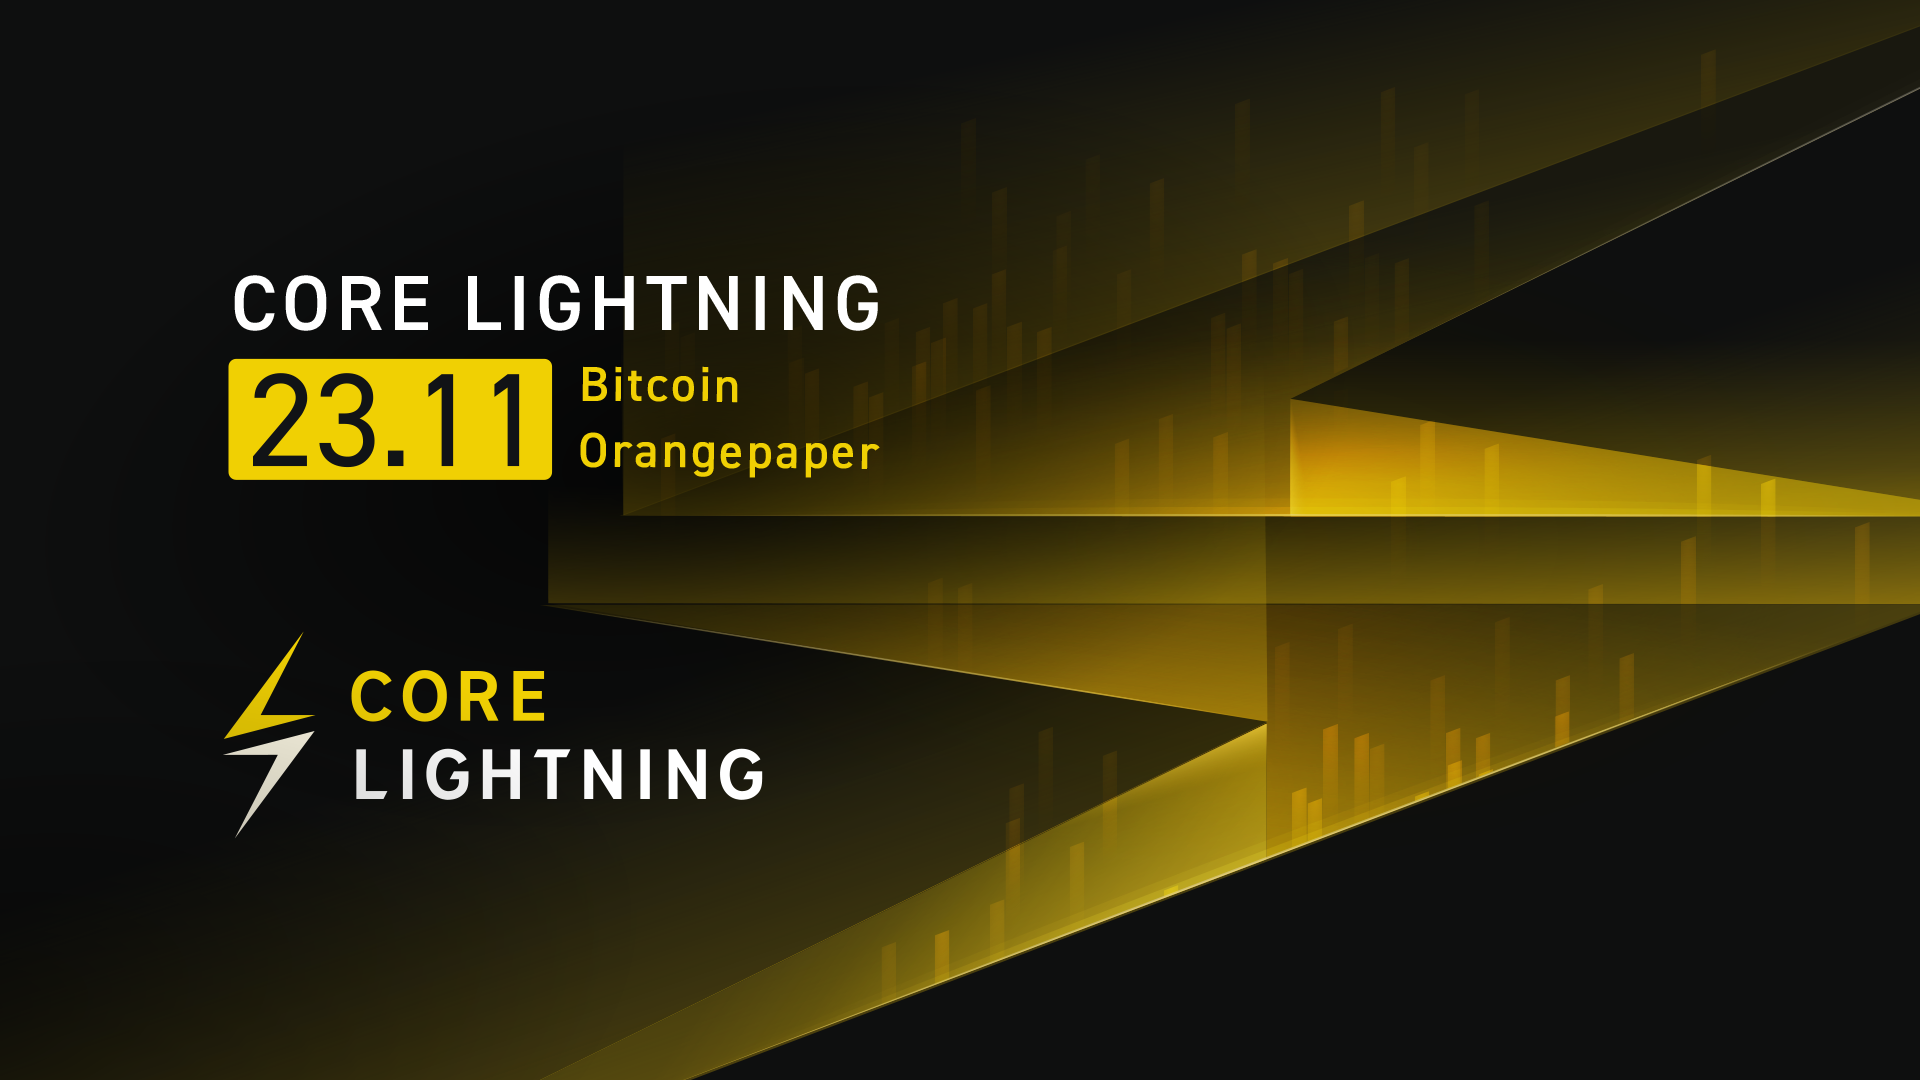 Core Lightning v23.11: "Bitcoin Orangepaper"